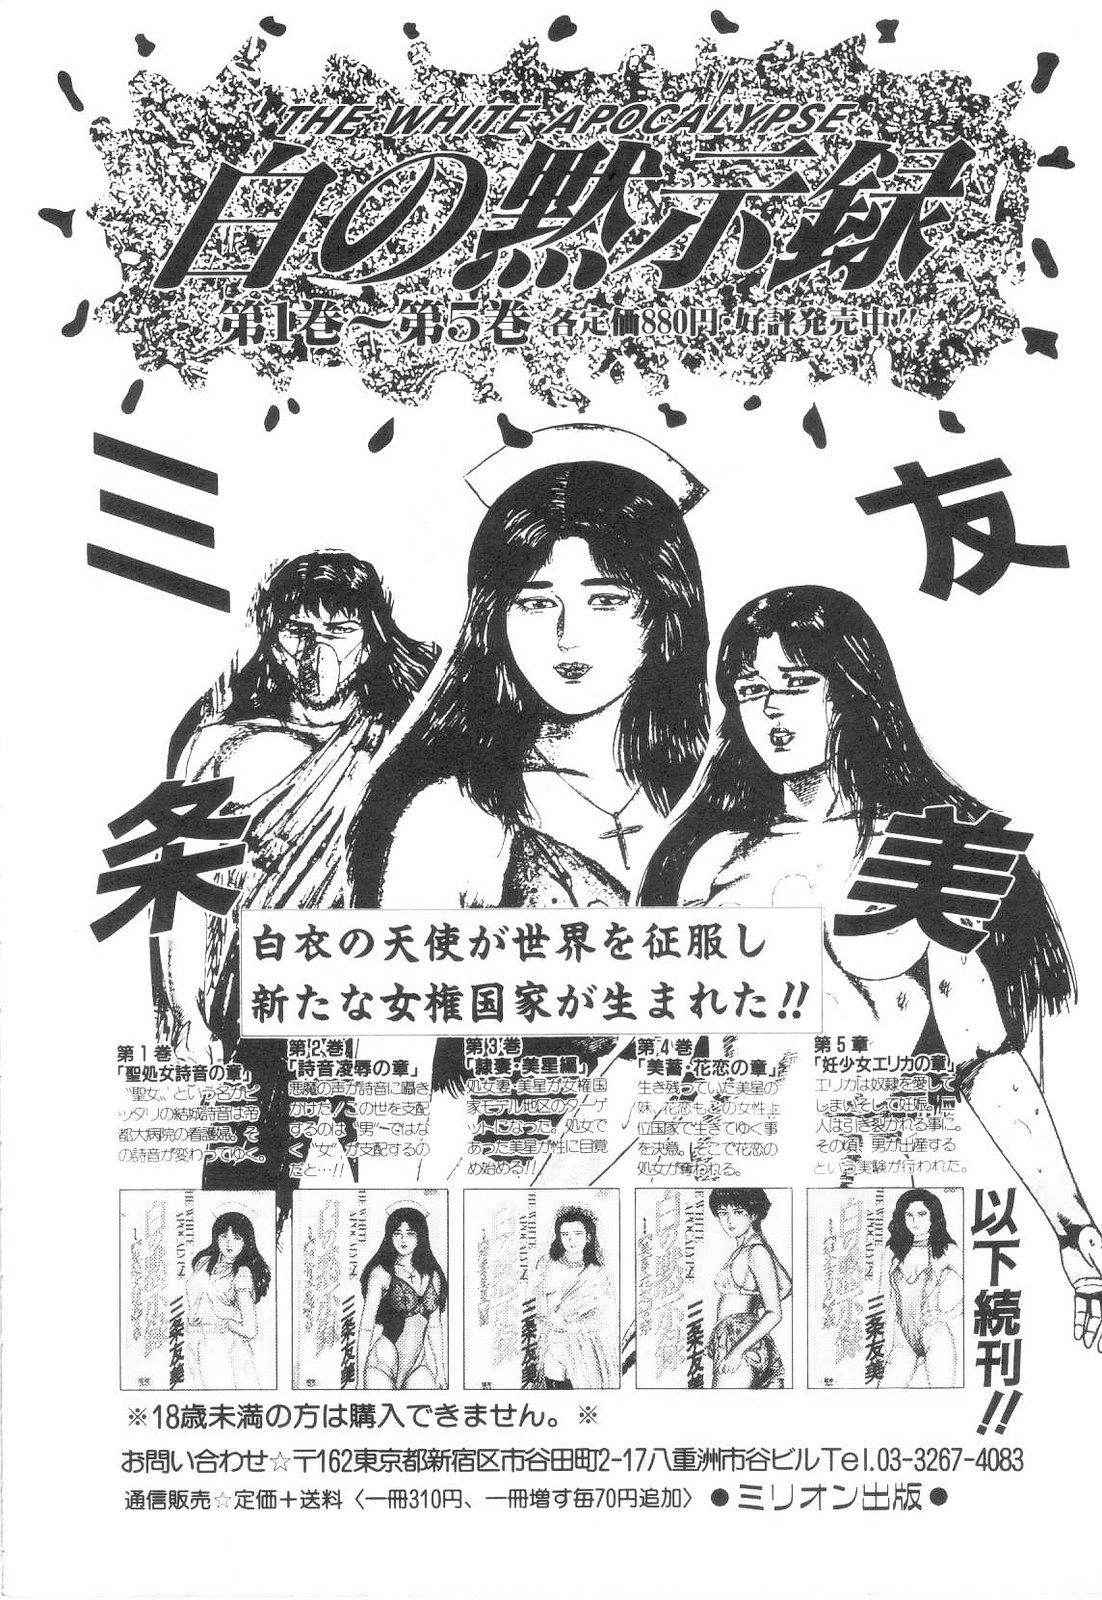 Shiro no Mokushiroku Vol. 6 - Juuai Erika no Shou 201